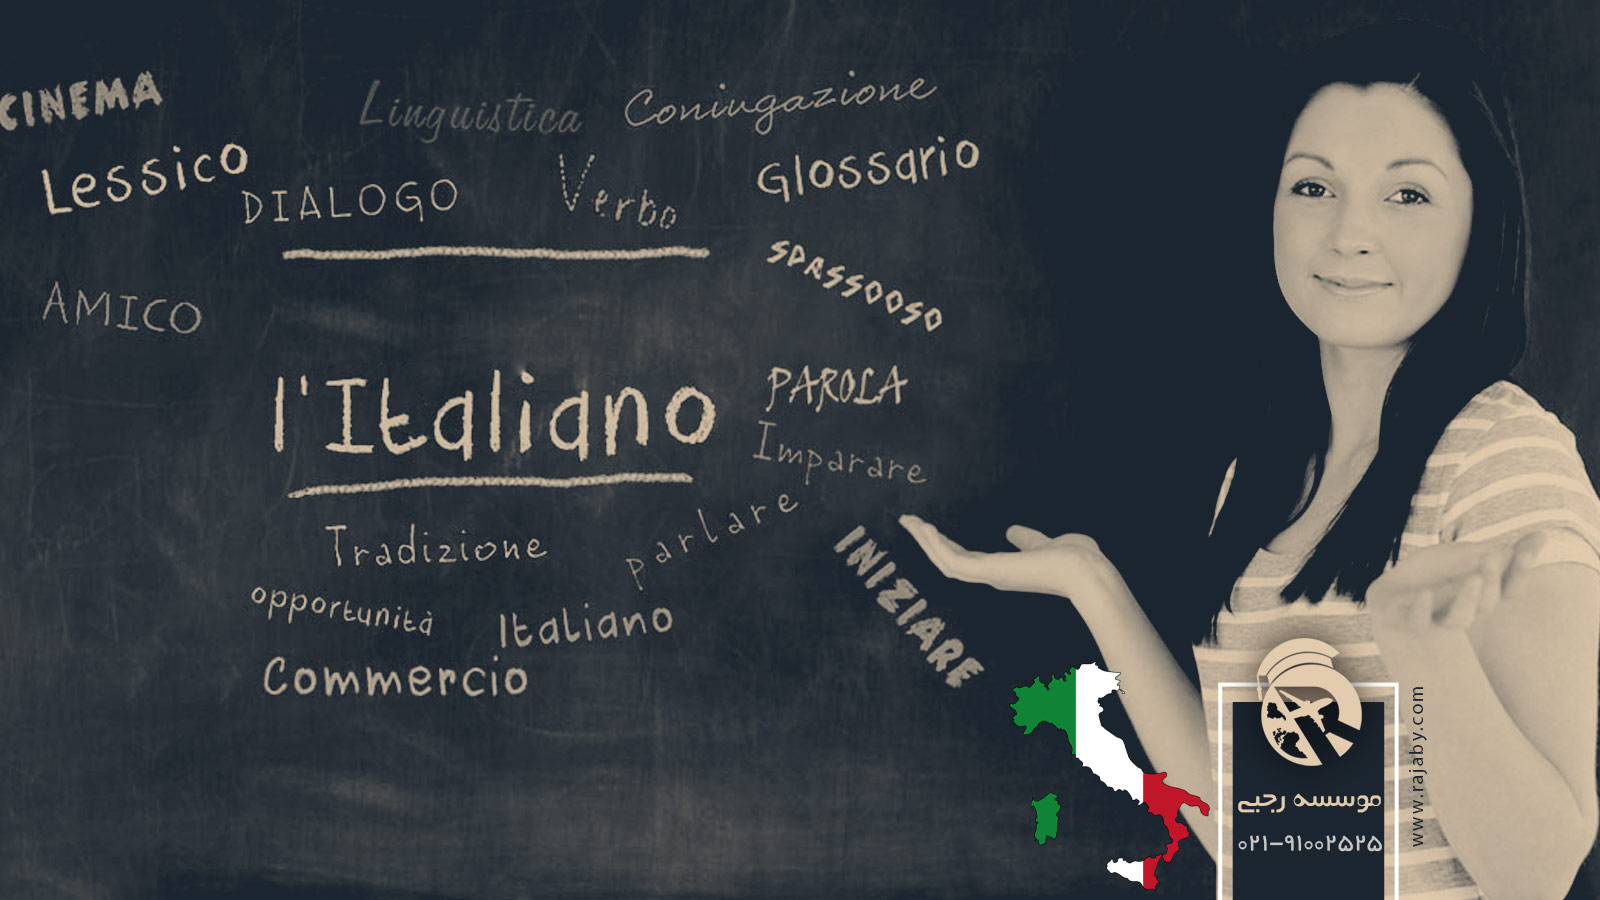 خط و زبان مردم ایتالیا